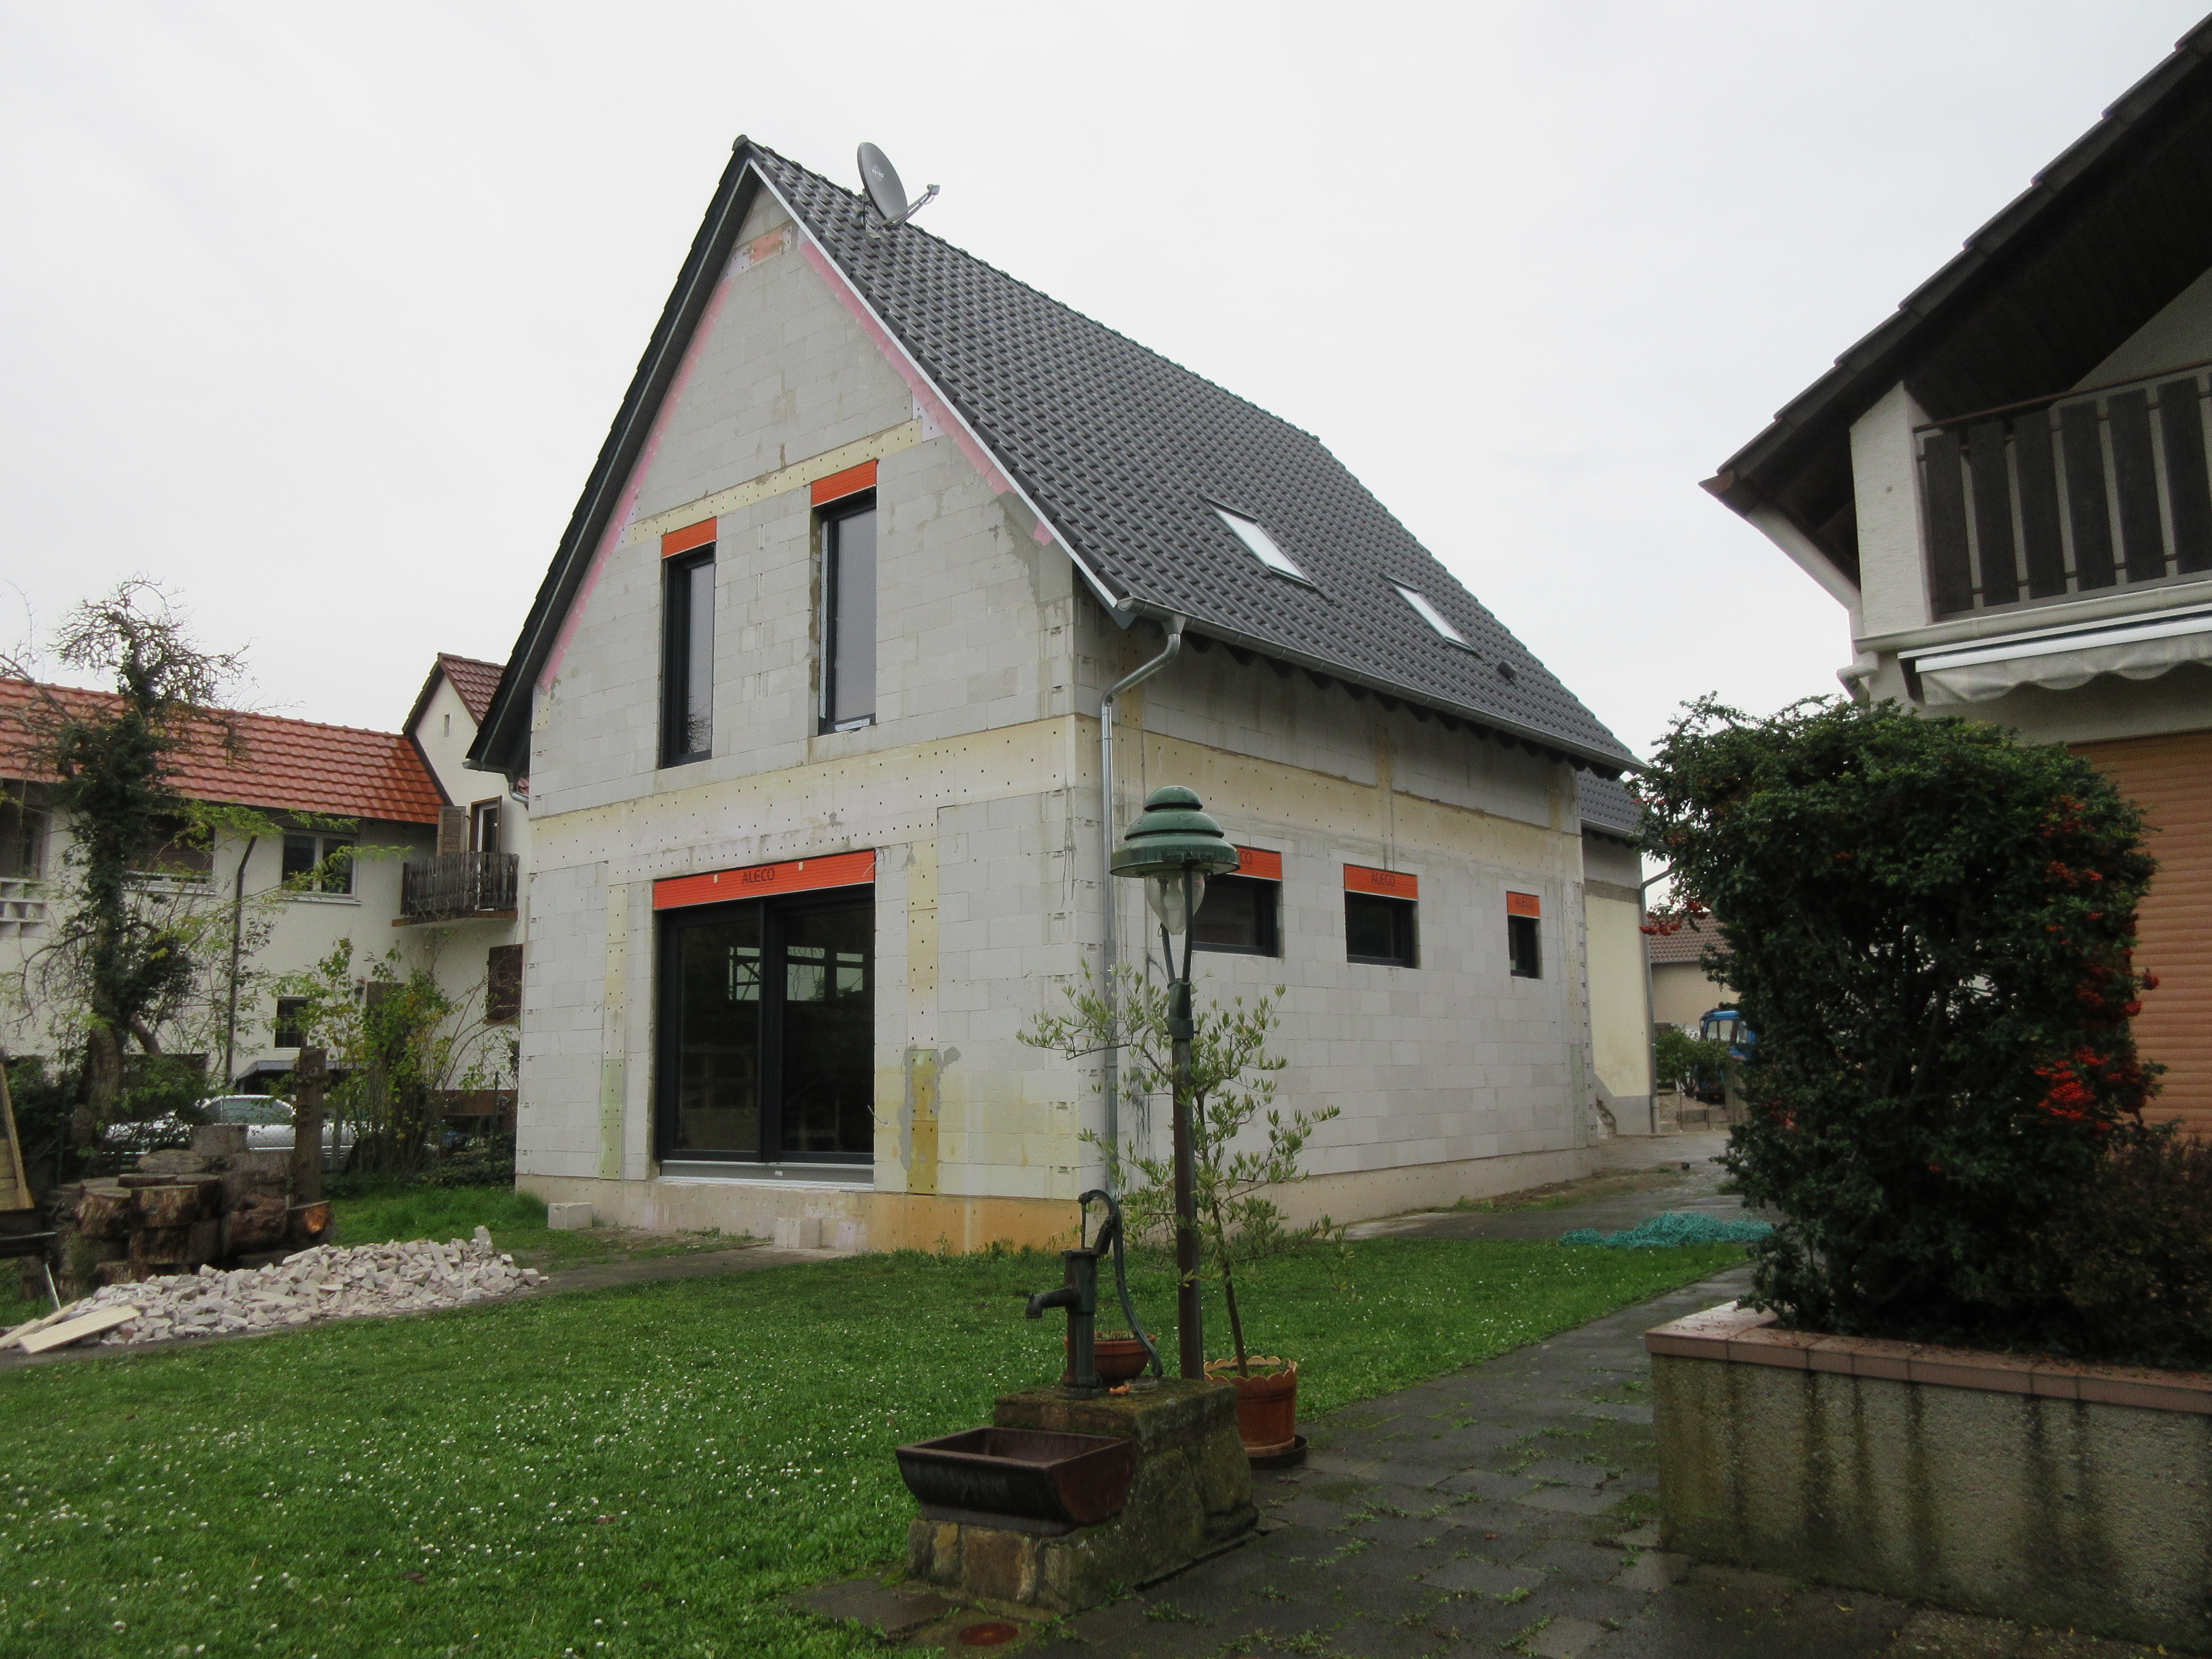 Wohnhausanbau in Lambsheim mit einer Statik durch das Ingenieurbüro Hammann